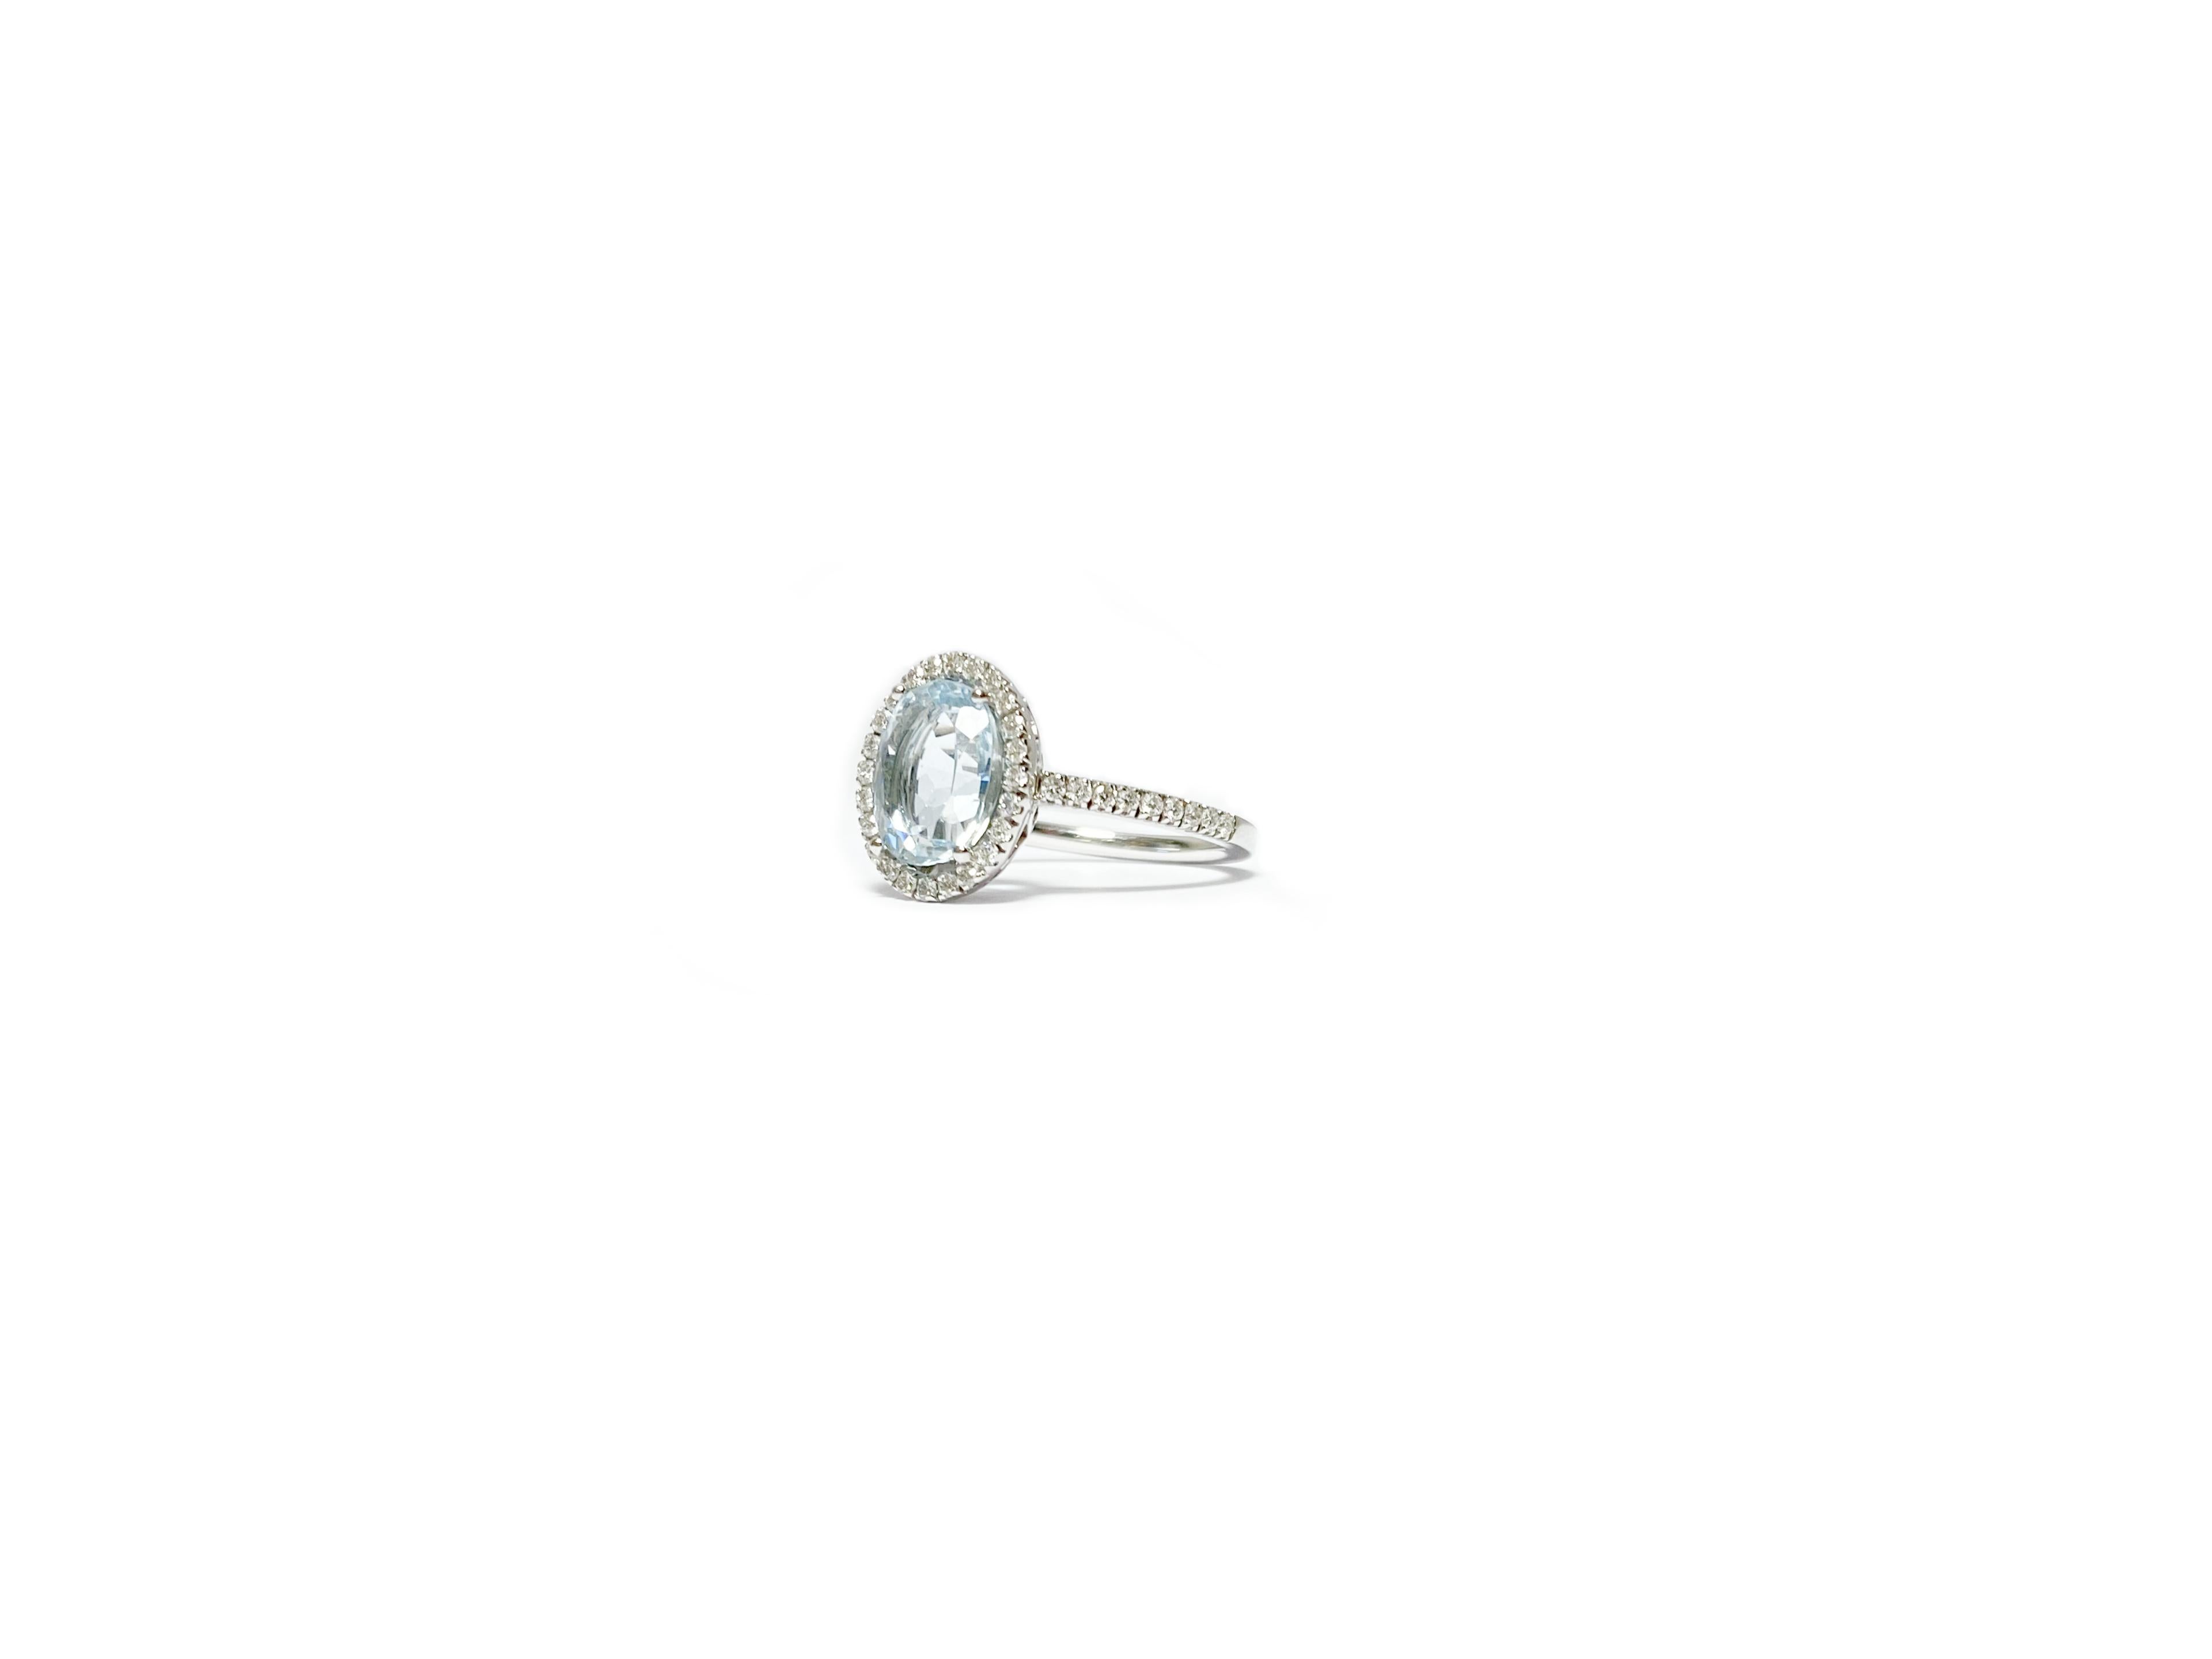 Stupendo Anello in oro Bianco 18 carati, con Acquamarina centrale da 2,40 carati e Diamanti taglio brillante da 0,36 carati